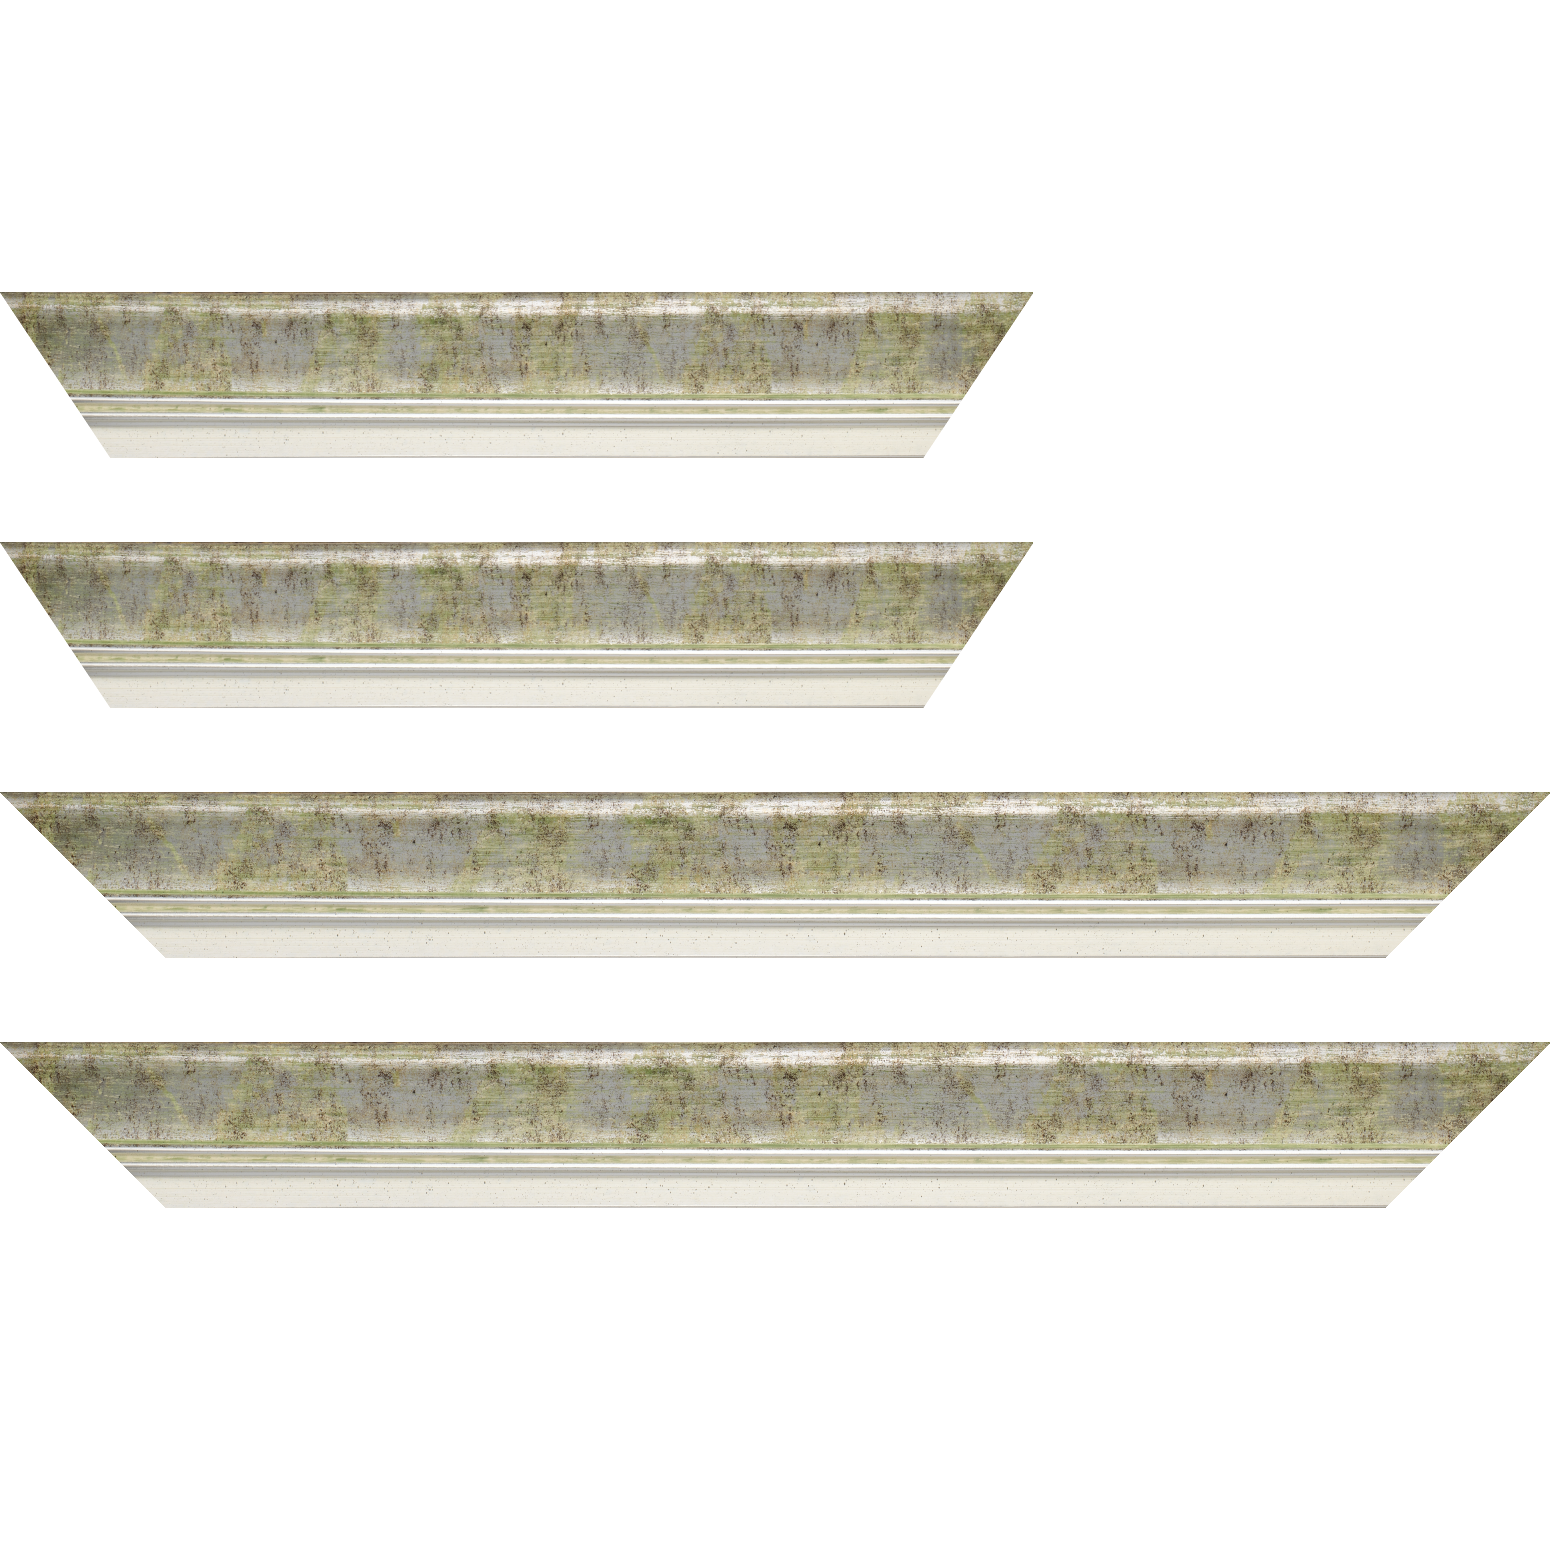 Baguette bois profil incurvé largeur 5.7cm de couleur vert fond argent marie louise blanche mouchetée filet argent intégré - 59.4x84.1